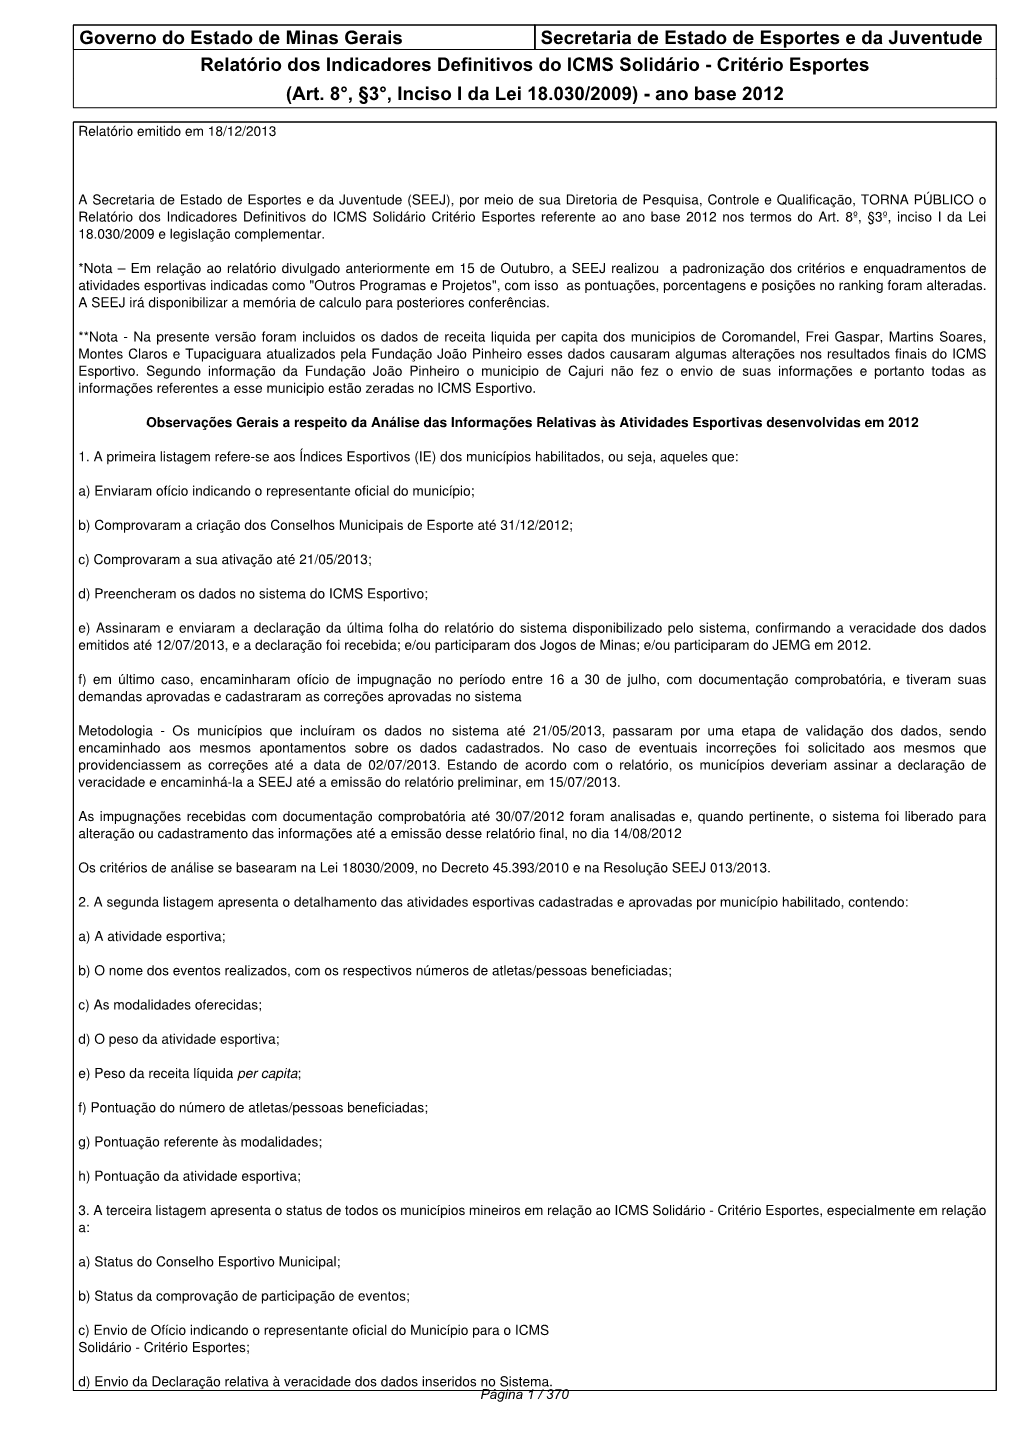 Governo Do Estado De Minas Gerais Secretaria De Estado De Esportes E Da Juventude Relatório Dos Indicadores Definitivos Do ICMS Solidário - Critério Esportes (Art